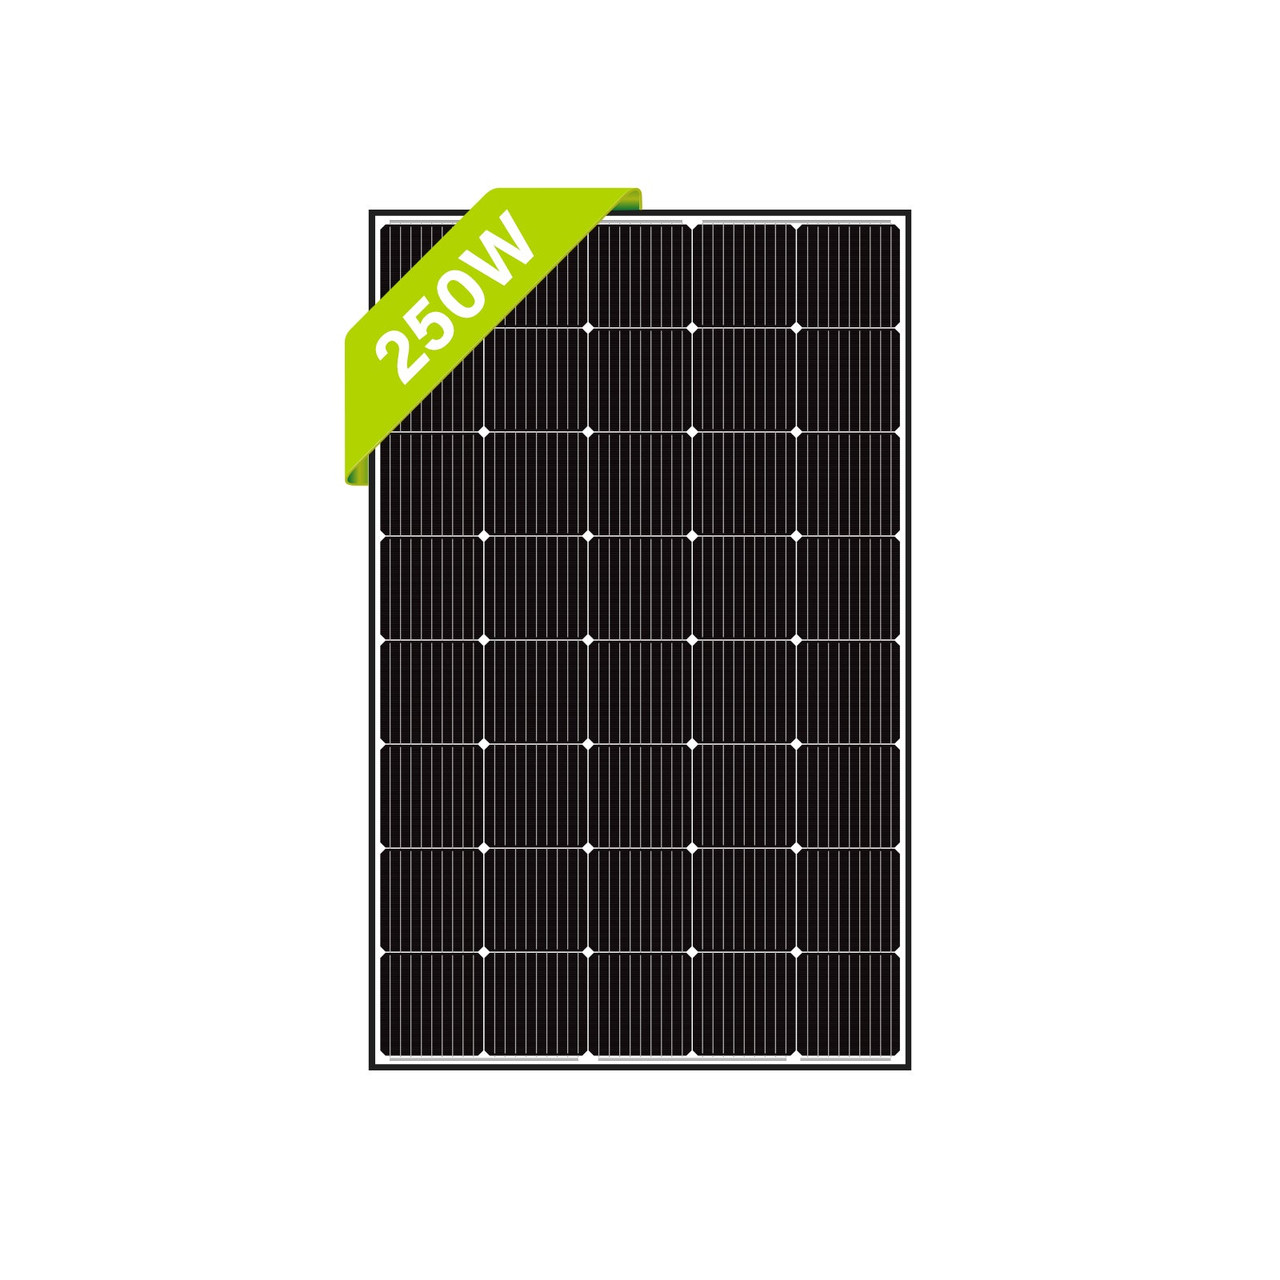 Kit Solar 12v 250w Hora Inversor 1000w